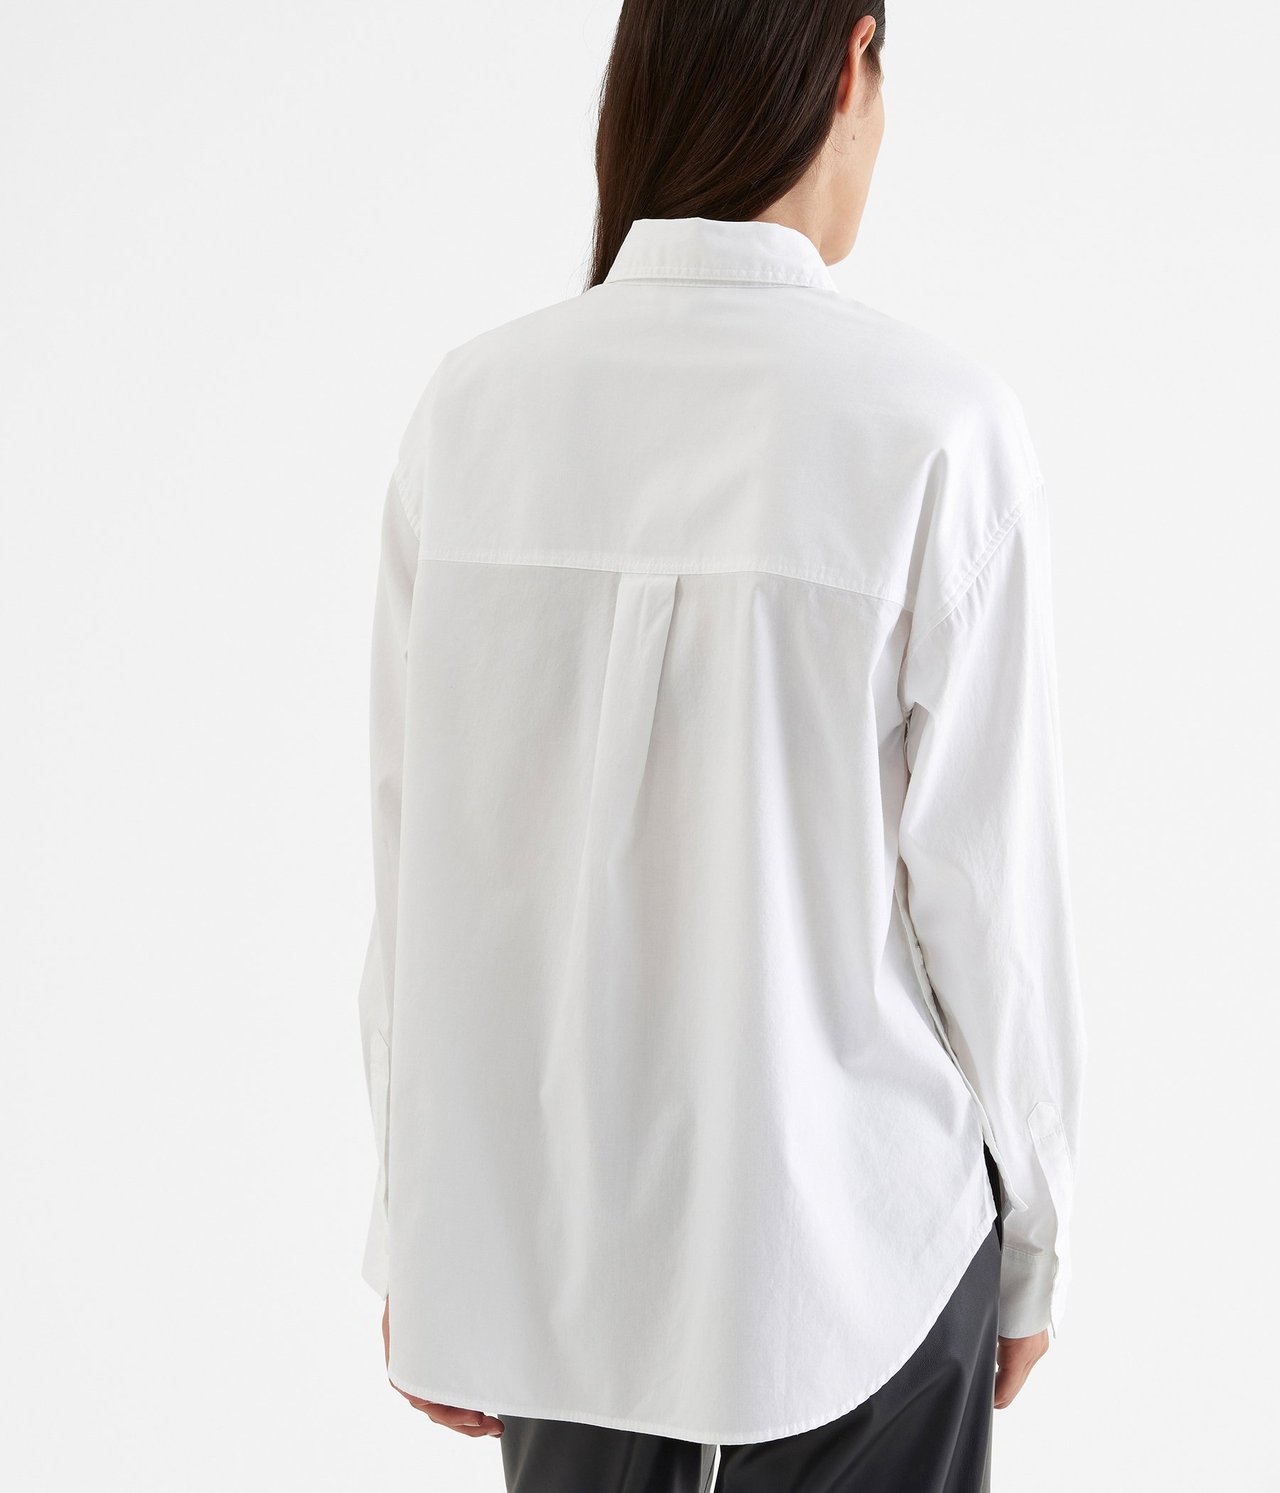 Skjorte med knepping i sidene Hvit - null - 2